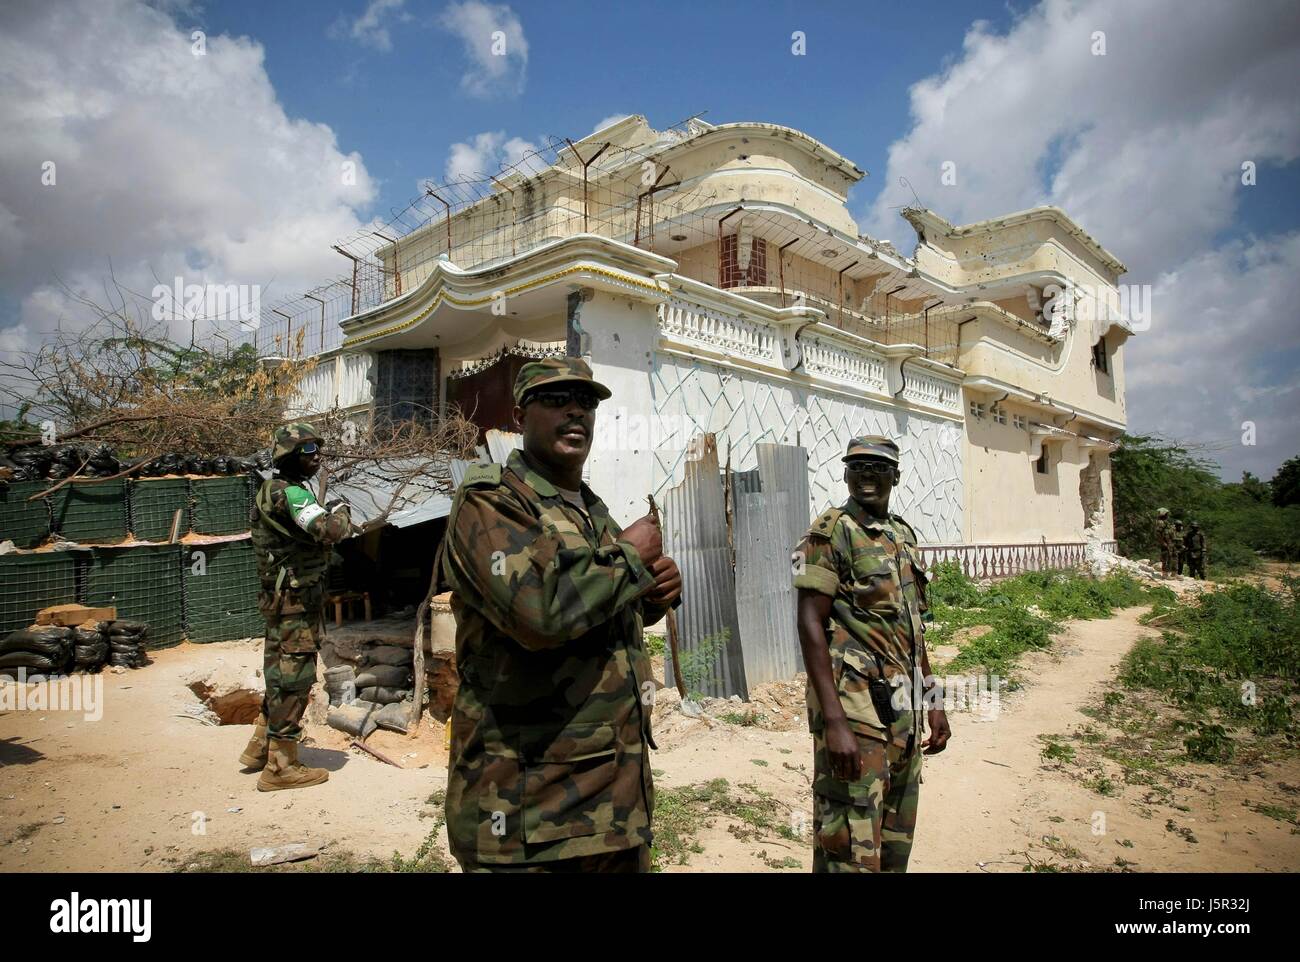 Mission de l'Union africaine en Somalie (AMISOM) soldats ougandais patrouillent le quartier Yaaqshiid après une flambée d'attentats à la voiture piégée et d'engins explosifs improvisés (IED) attaque le 5 décembre 2011 à Mogadishu, en Somalie. (Photo par Stuart Price/ANISOM par Planetpix) Banque D'Images